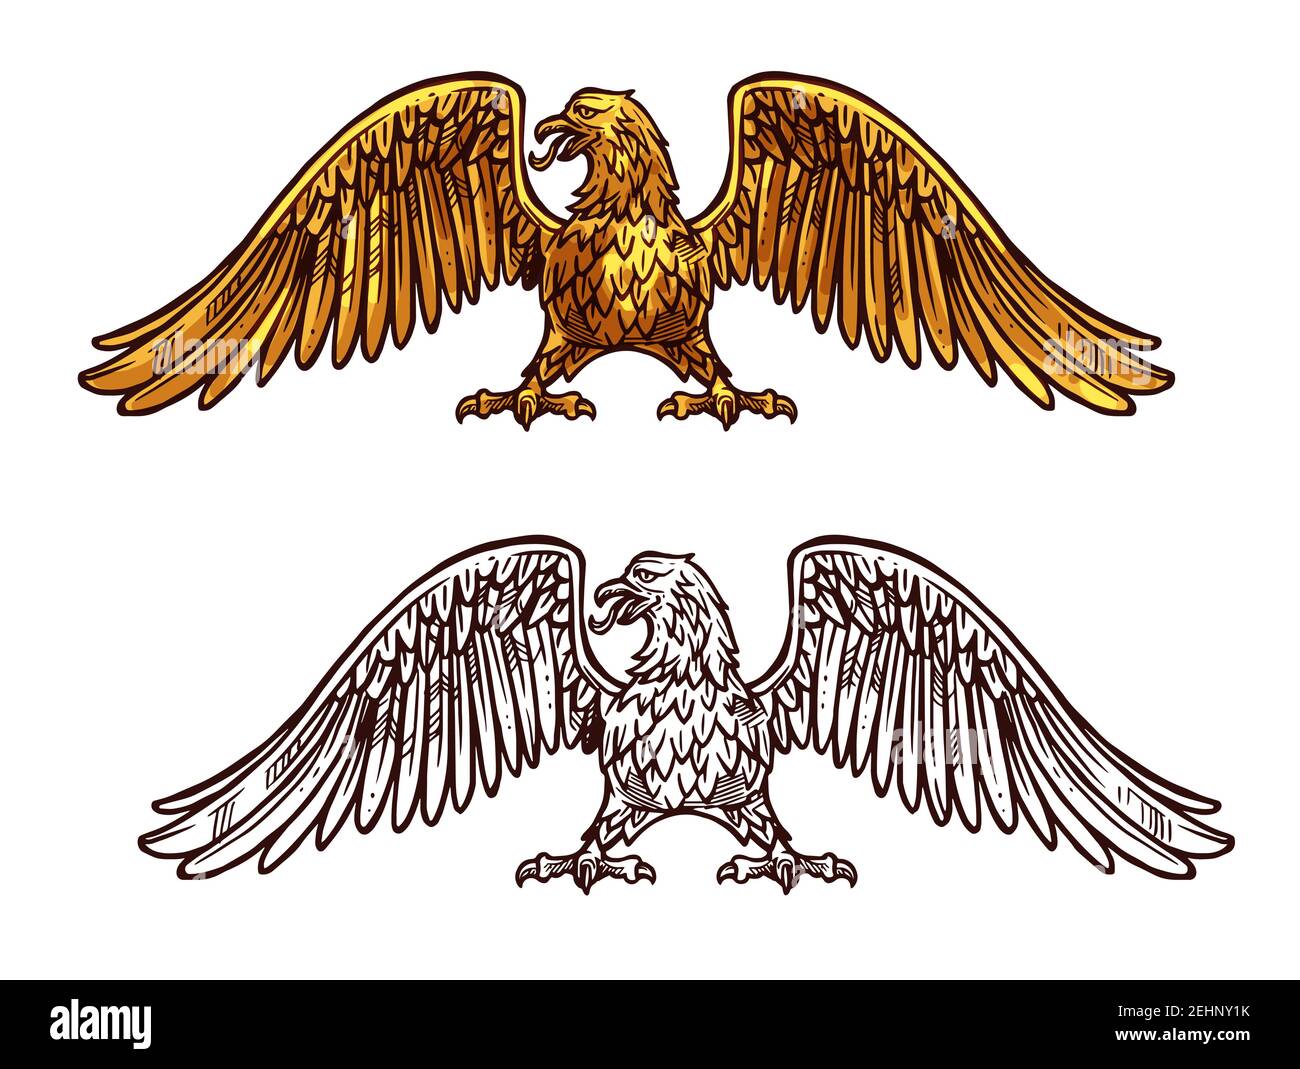 Icône héraldique d'aigle, croquis de style médiéval. Griffin avec de larges ailes et des griffes acérées. Vecteur mythique ou légendaire oiseau avec le plumage doré, honorable Illustration de Vecteur